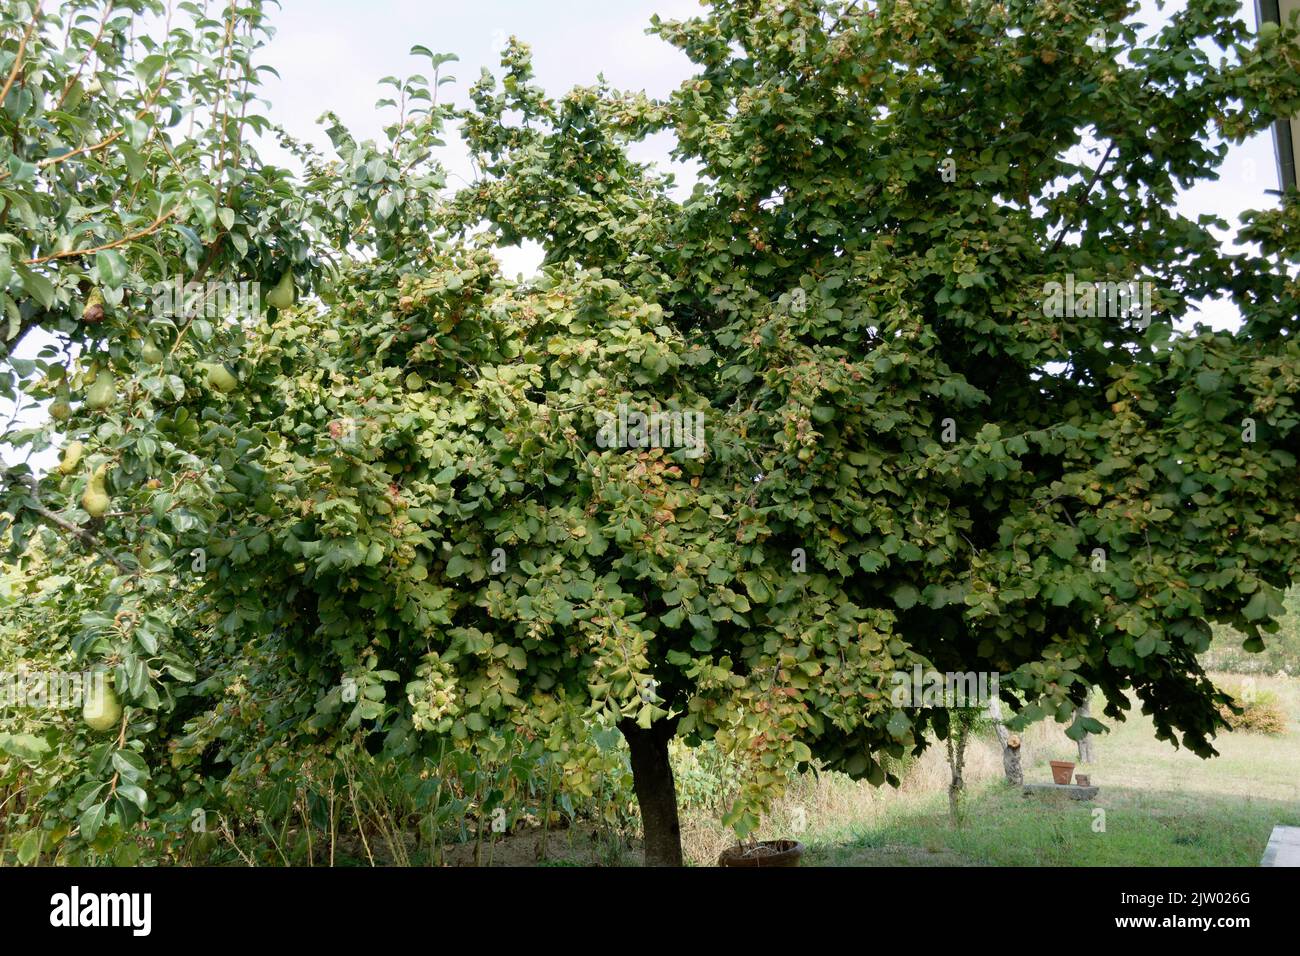 Haselnussbaum mit grünen Blättern im Sommer. Toskana, Italien Stockfoto